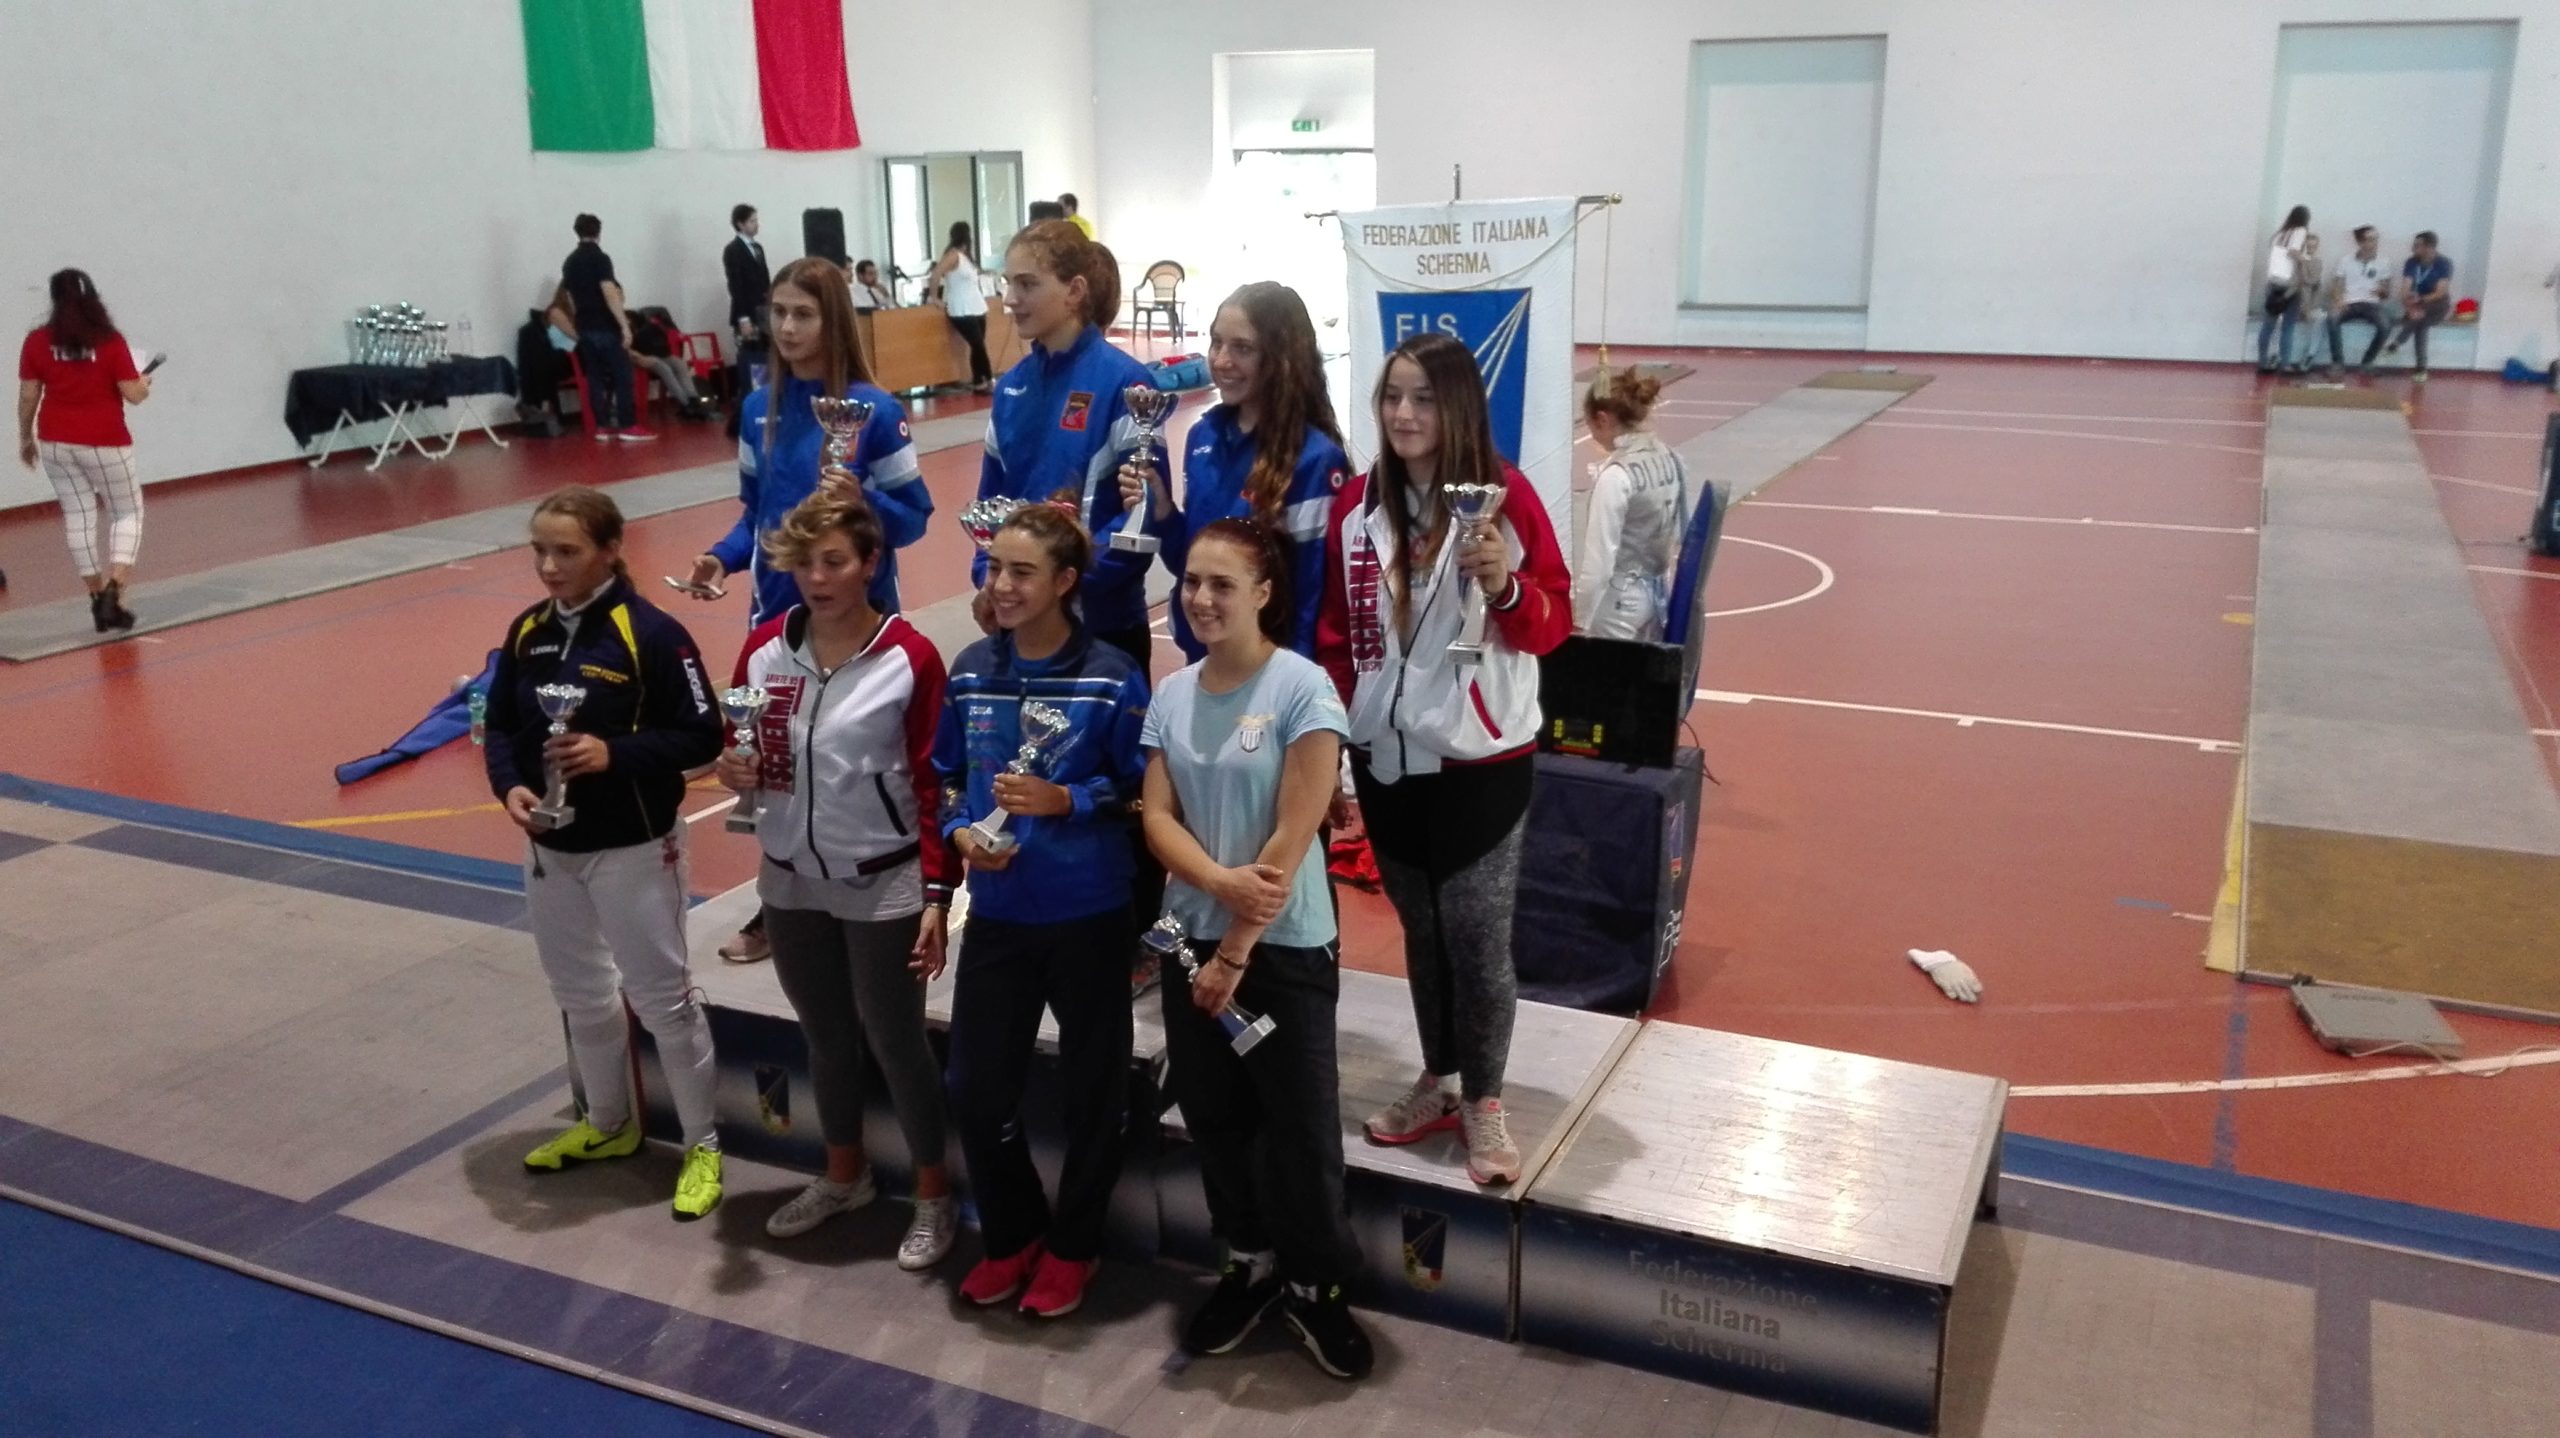 Roma 25.09.2016 Il podio della sciabola femminile (foto A.Mazzarano)